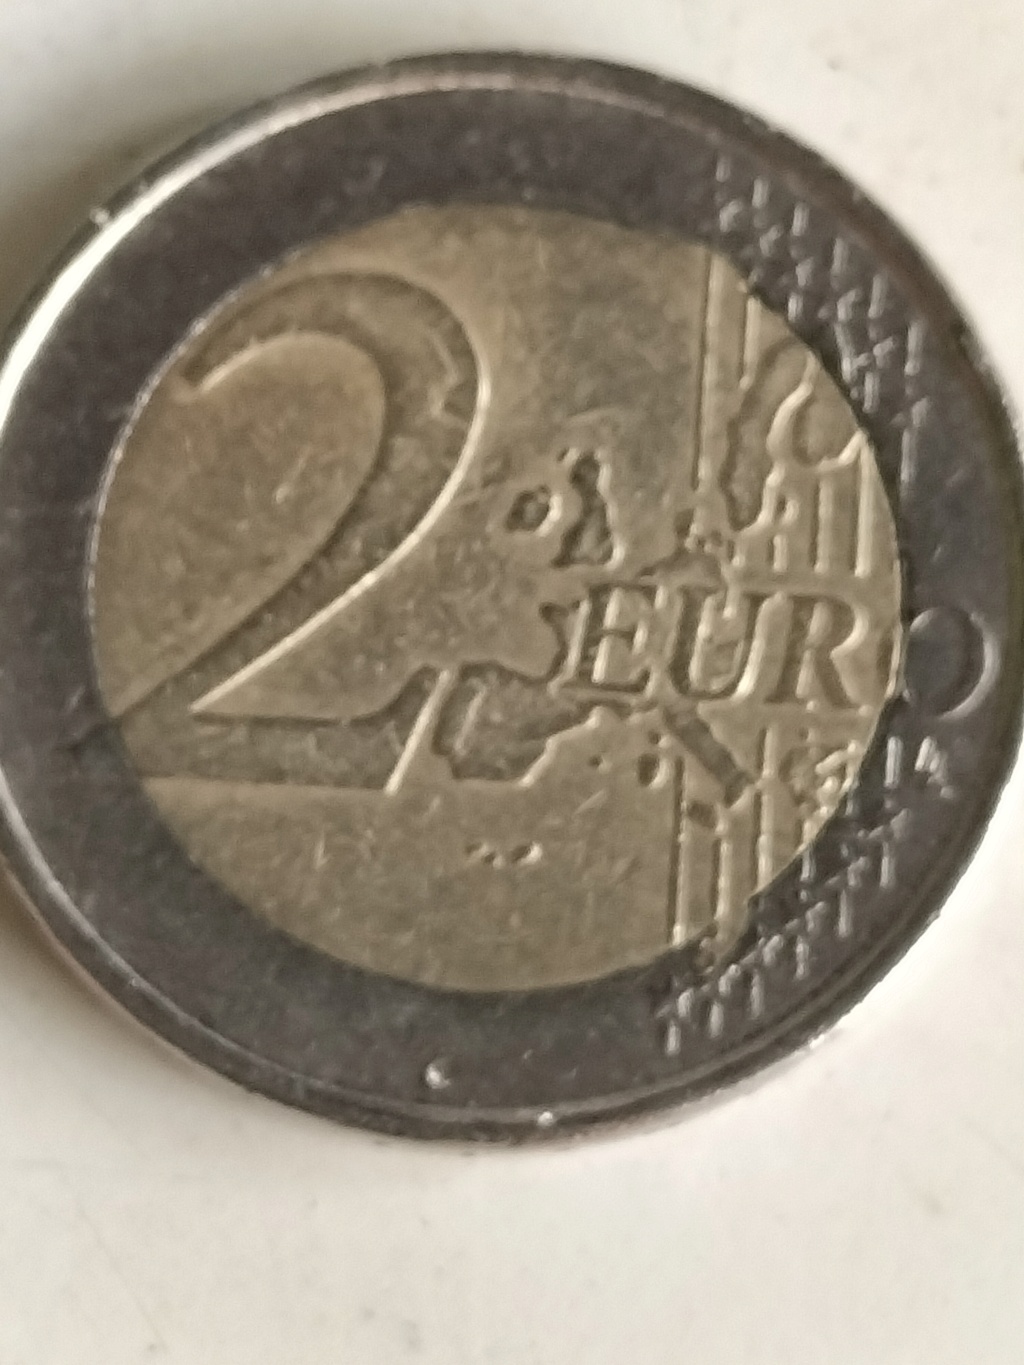 2€ alemanas con errores  Img20213